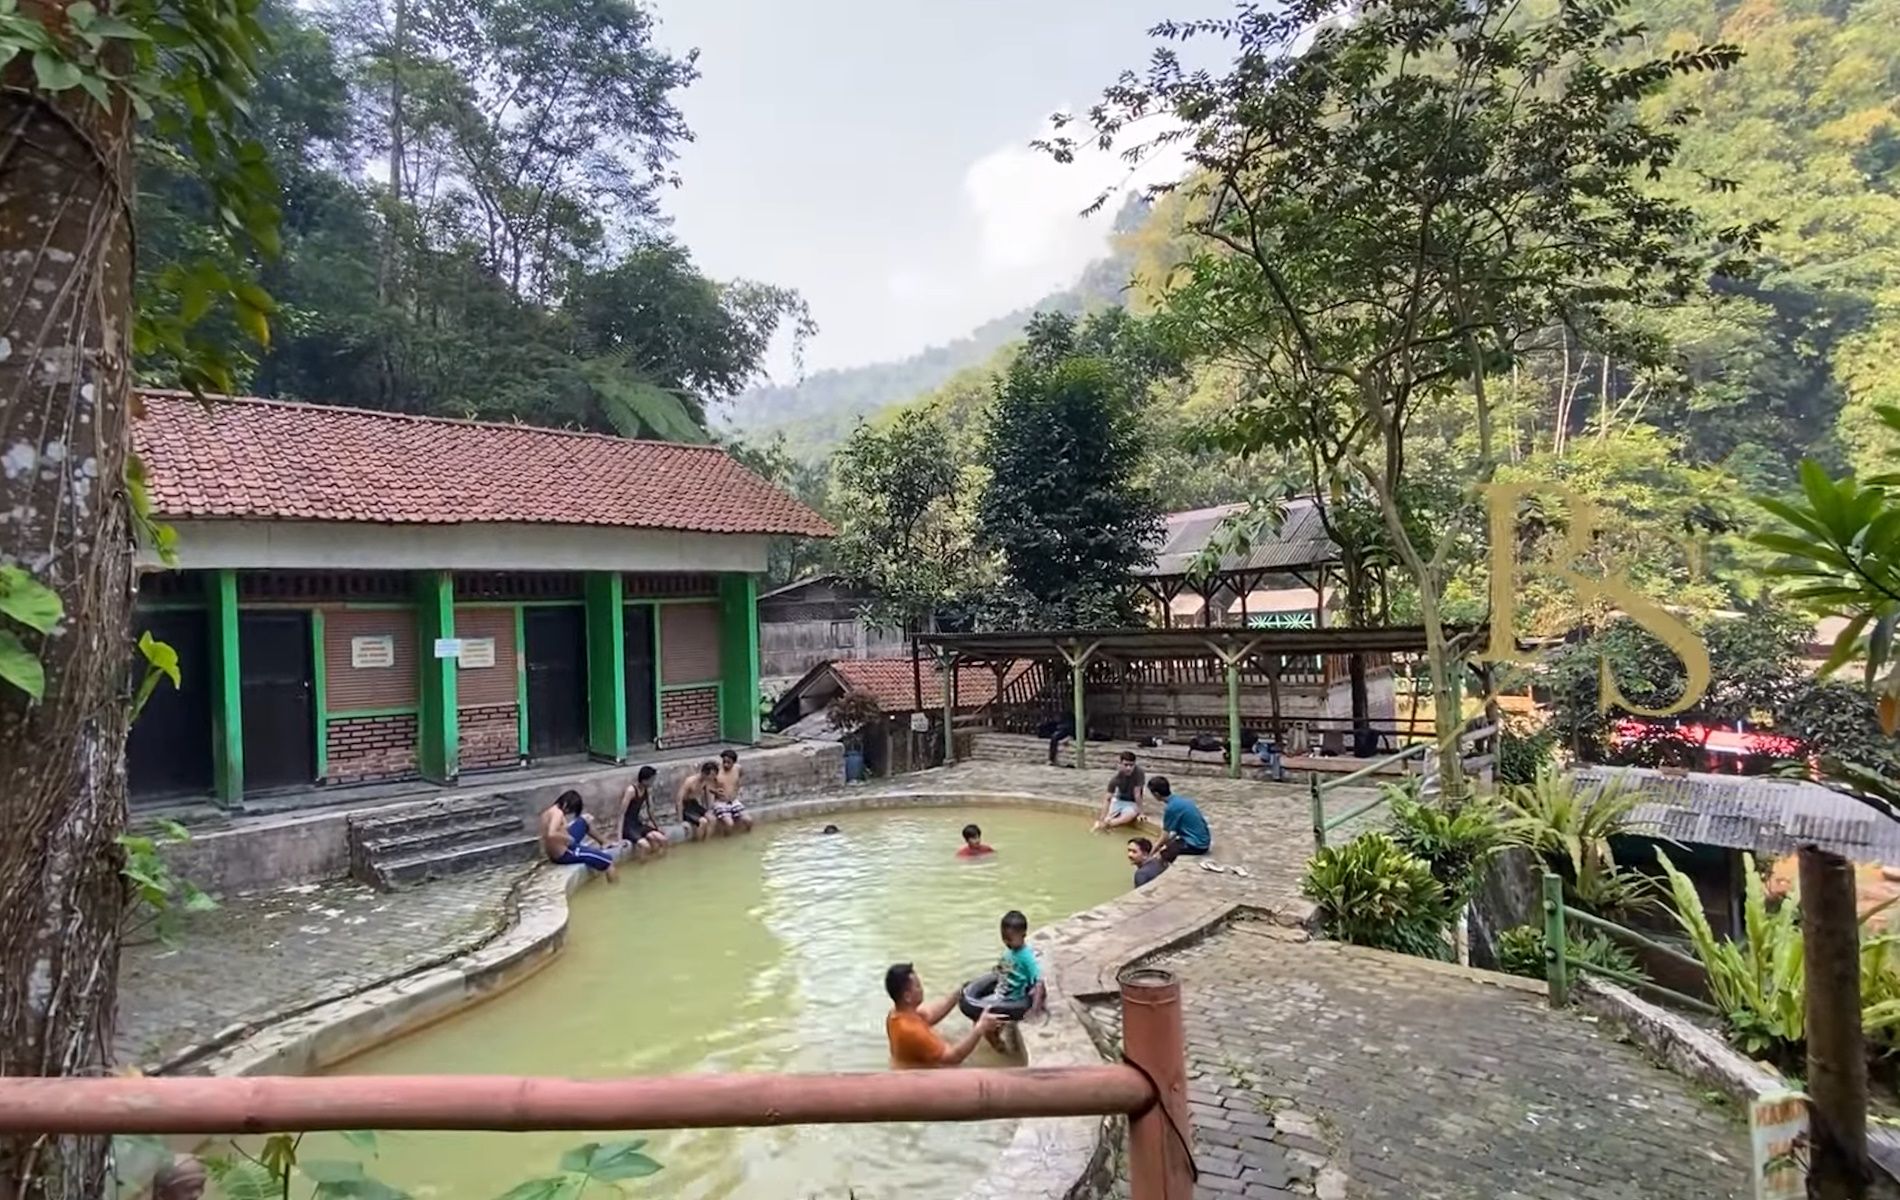 Tempat pemandian wisata air panas di Bogor.